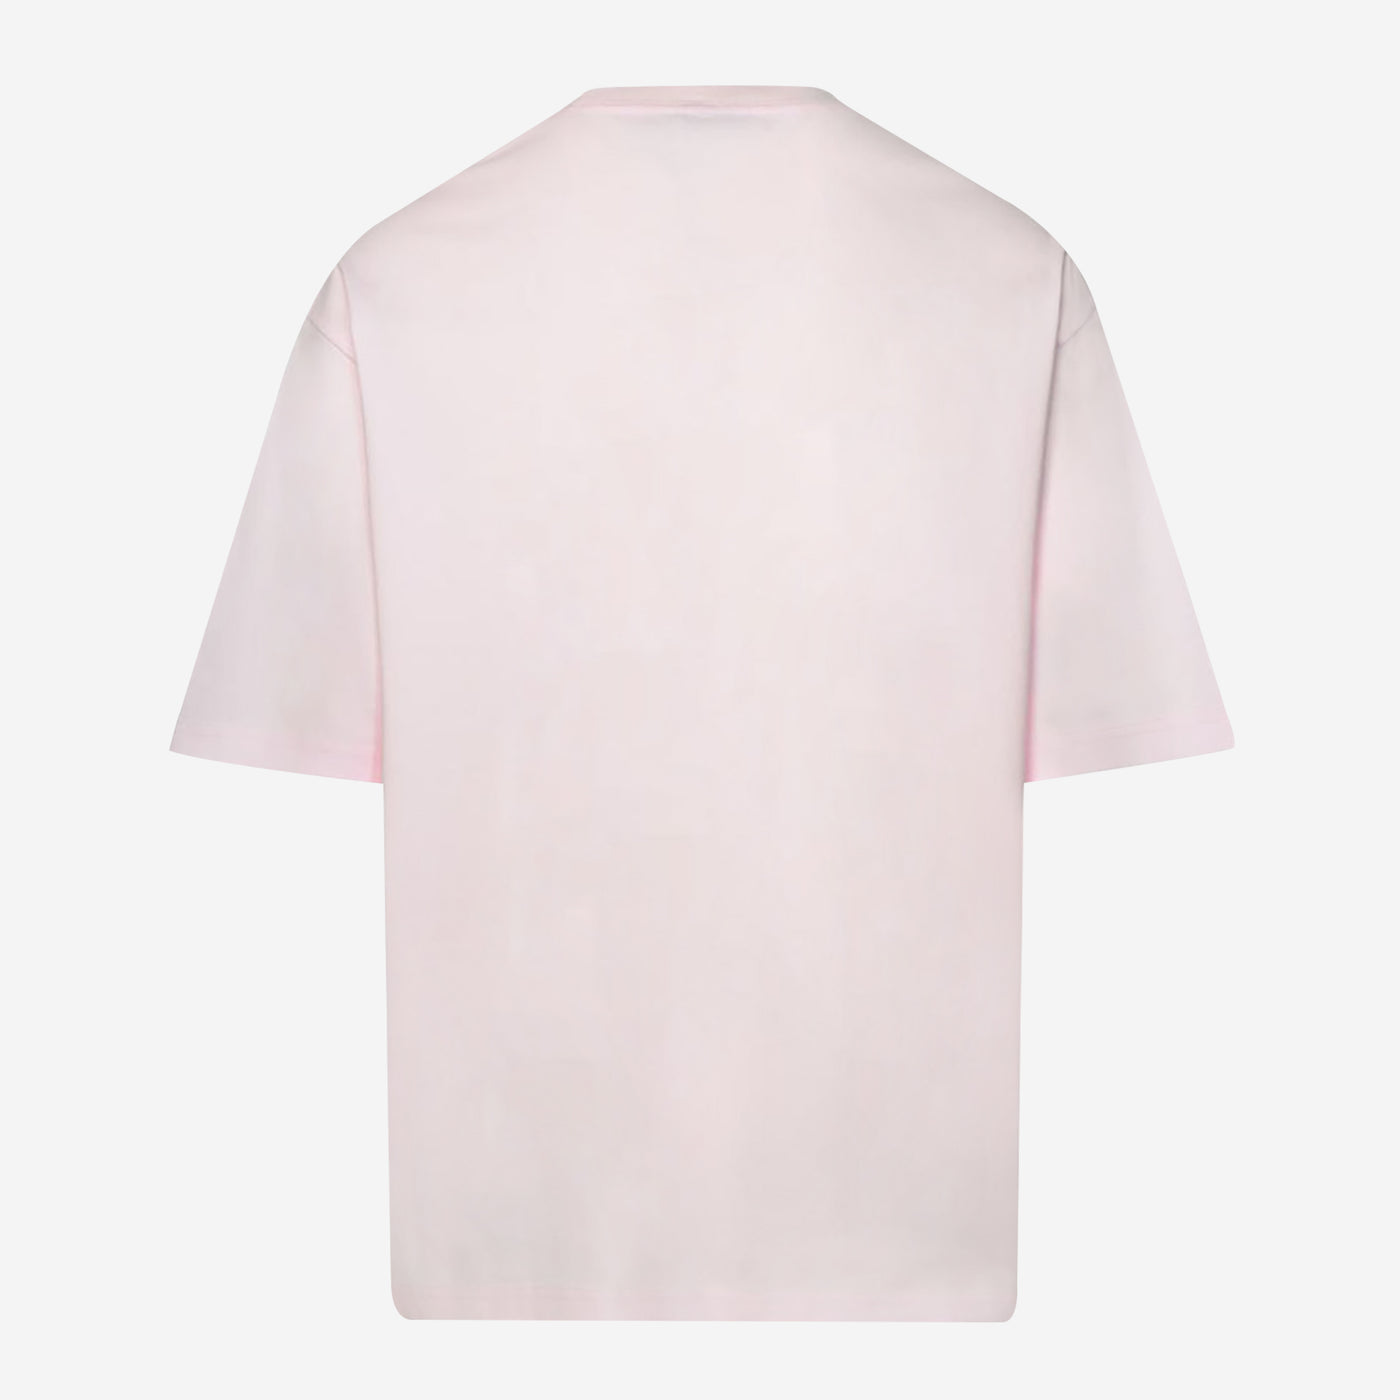 Lanvin Paris Oversize T-Shirt